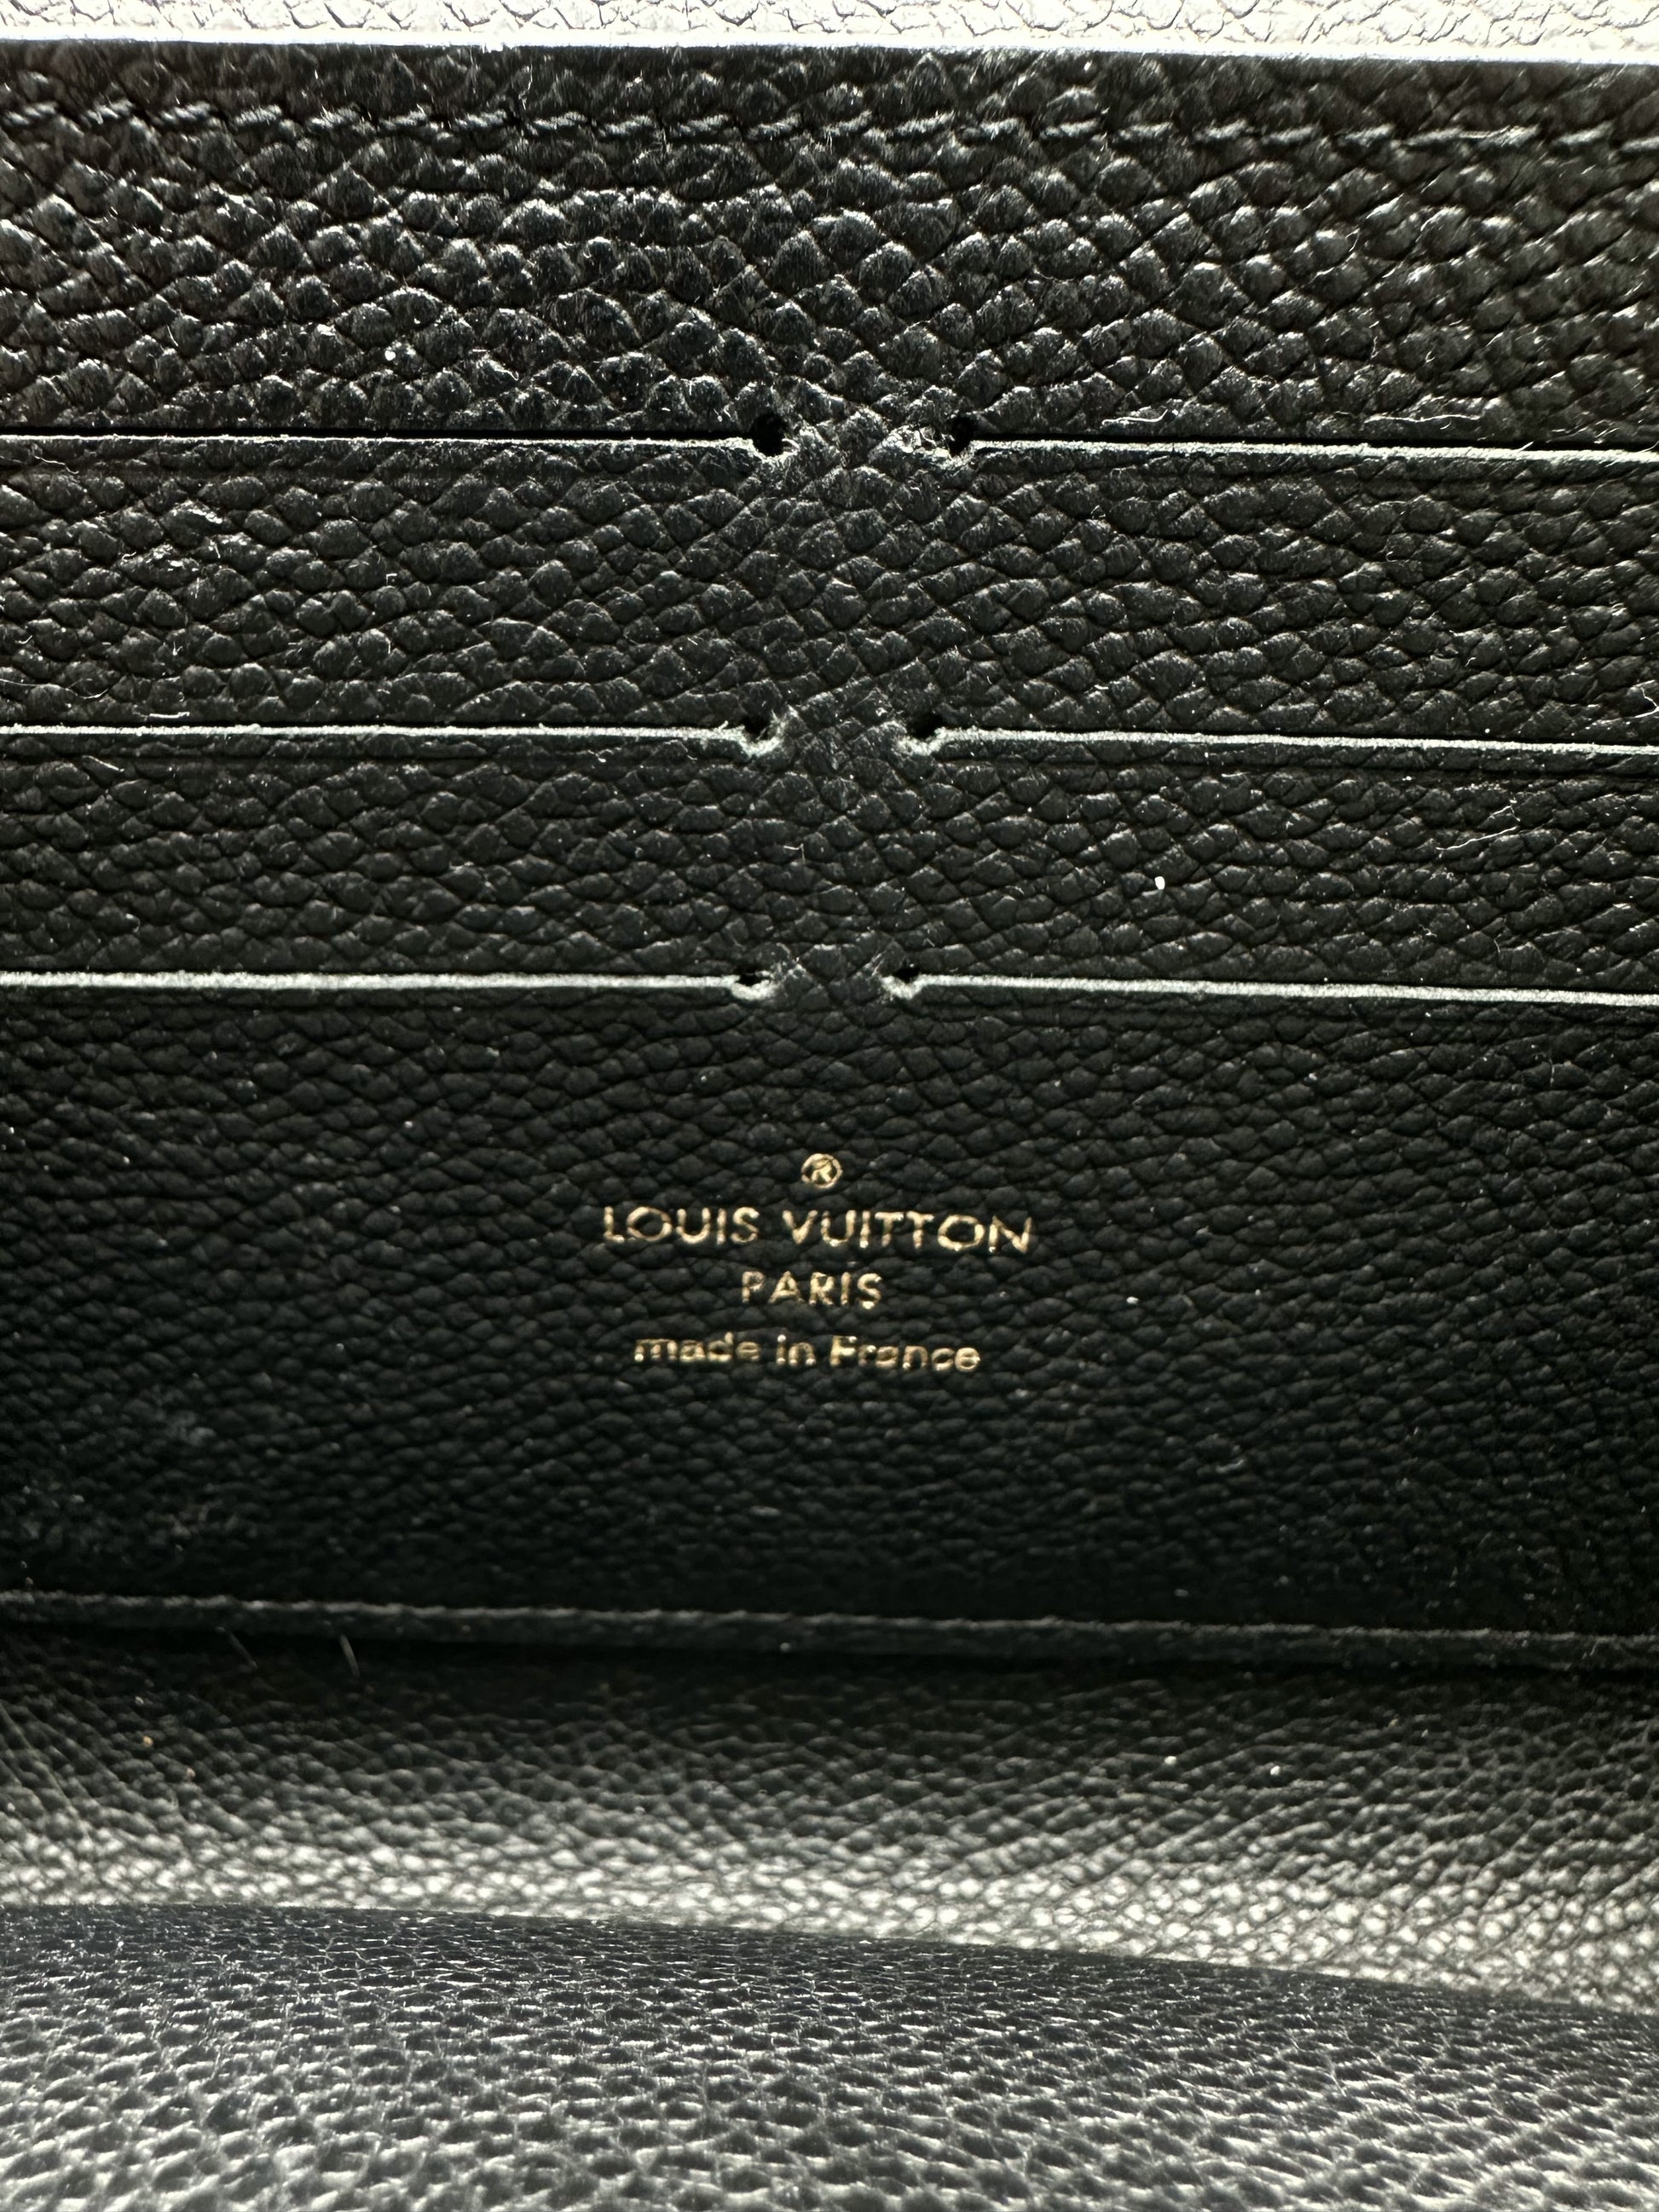 Louis Vuitton Monogram Empreinte Vavin Chain Wallet Black at